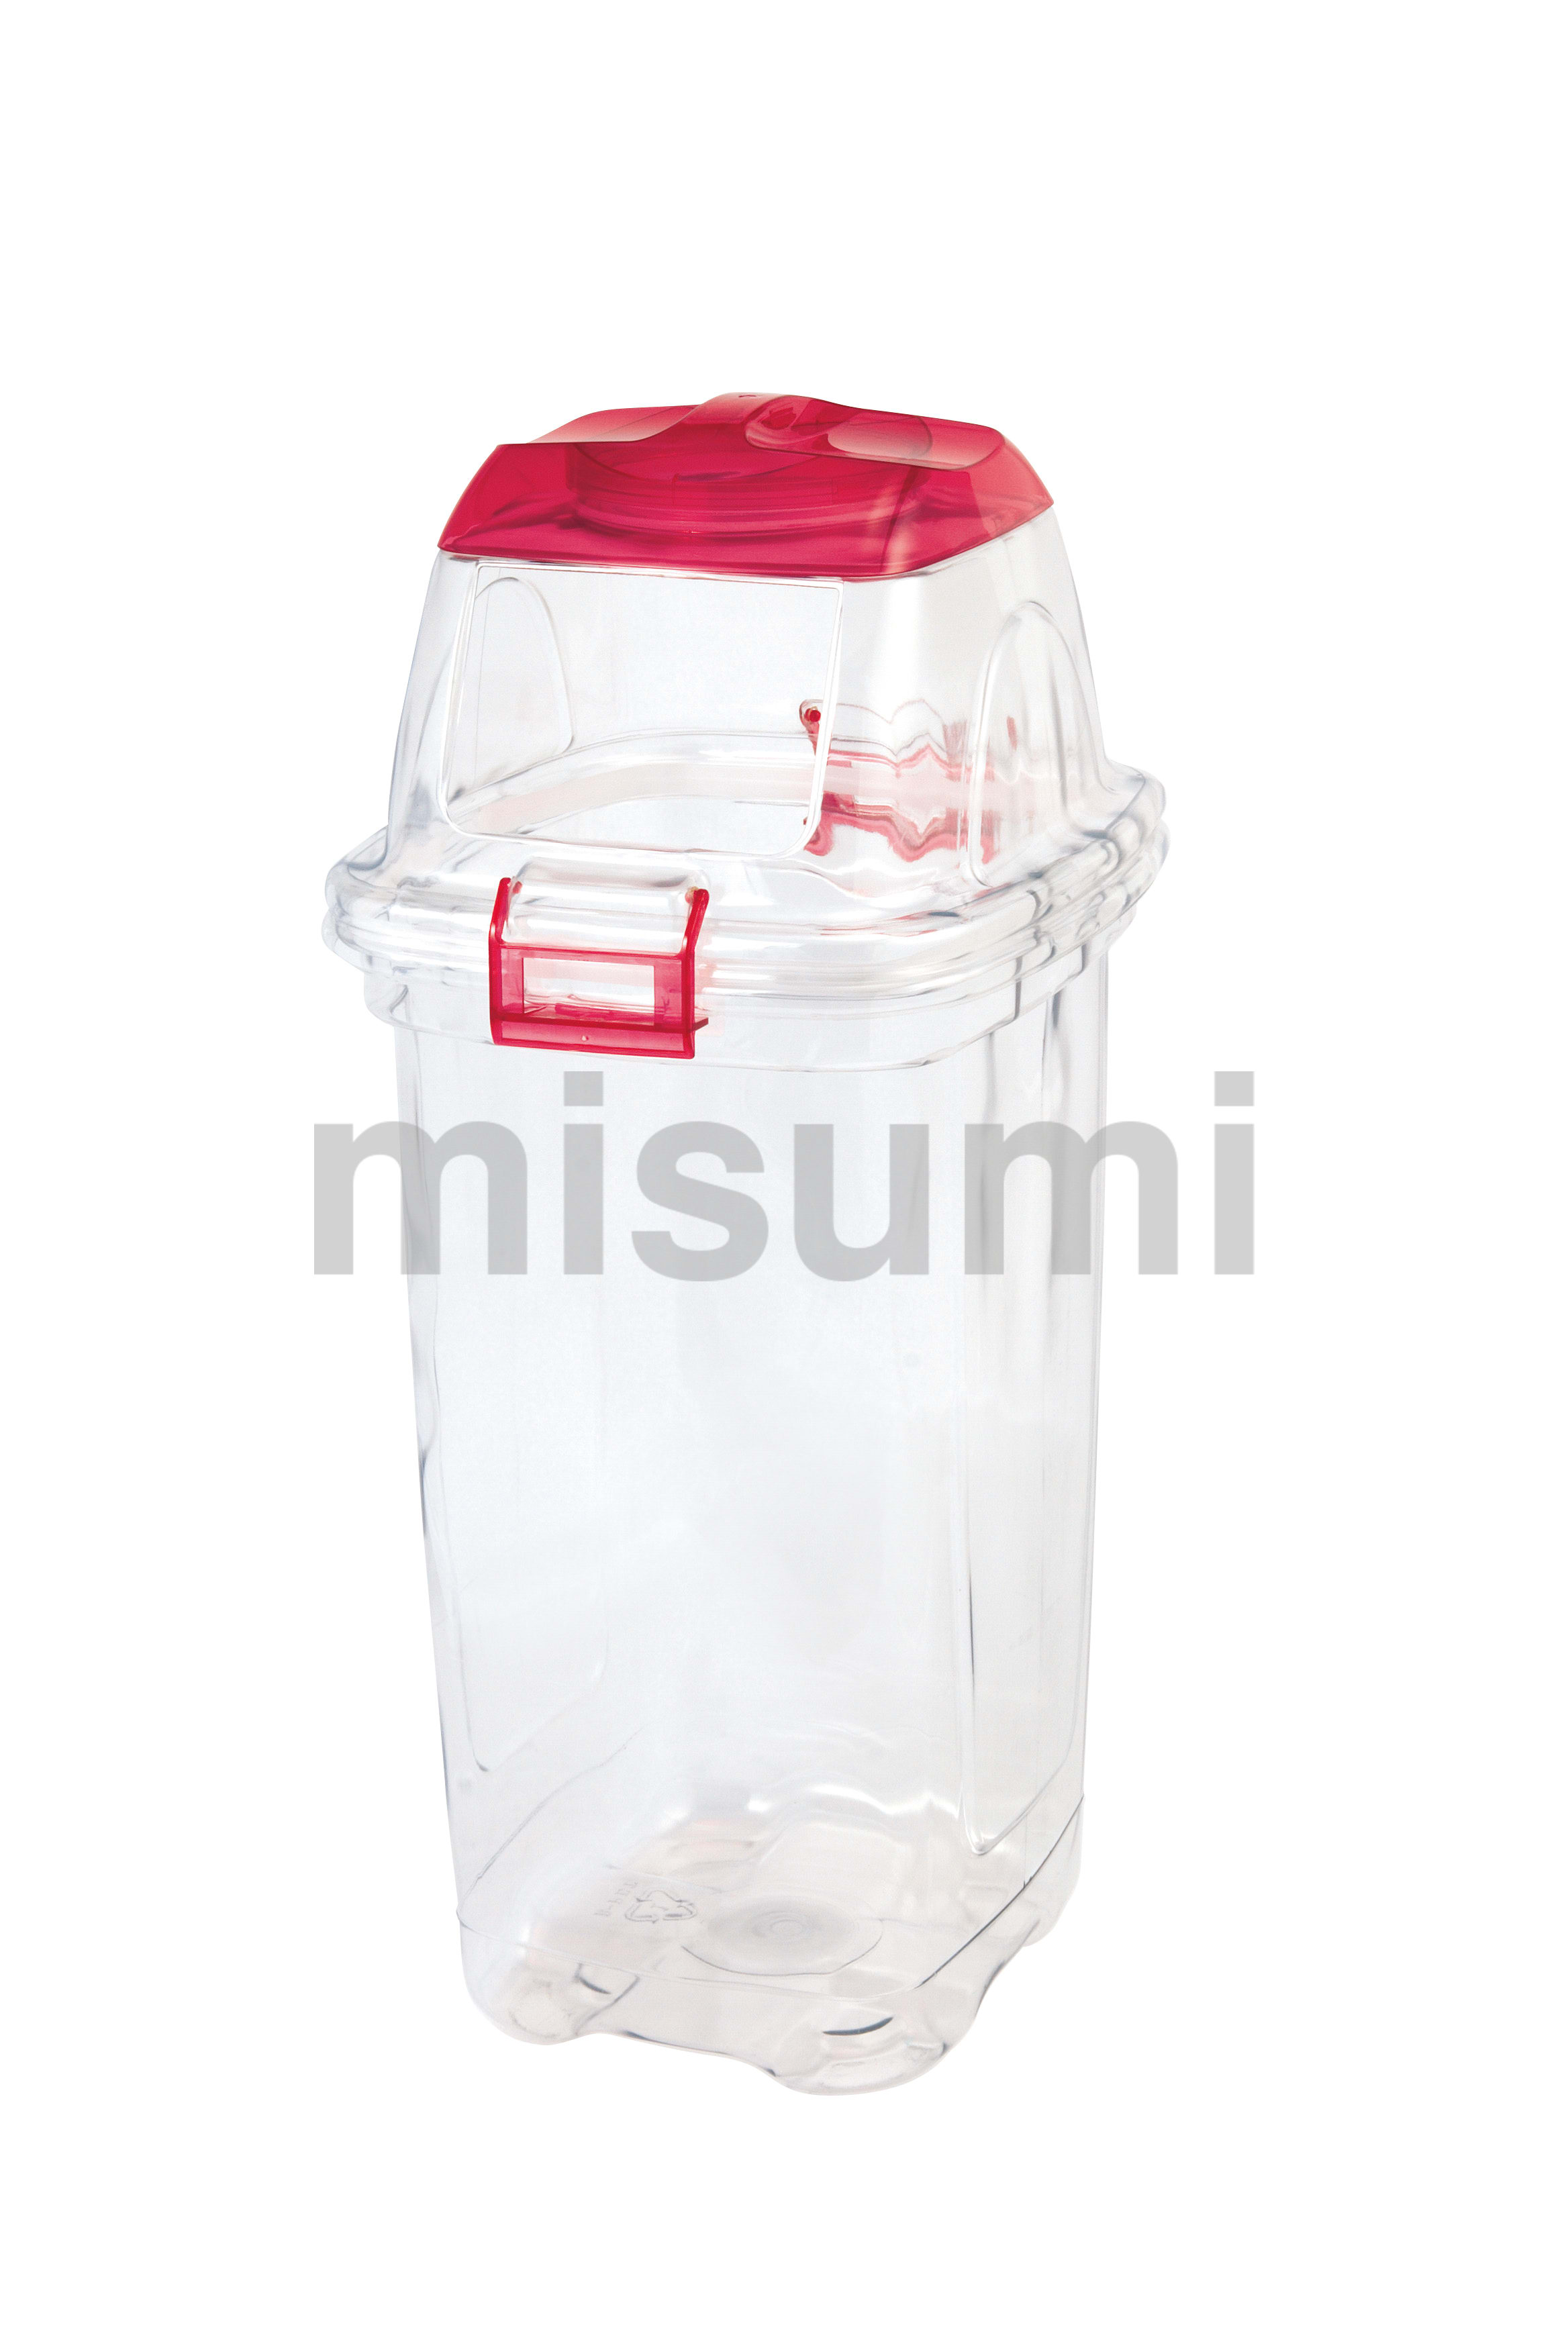 透明エコダスター 35L・45L 積水テクノ成型 MISUMI(ミスミ)